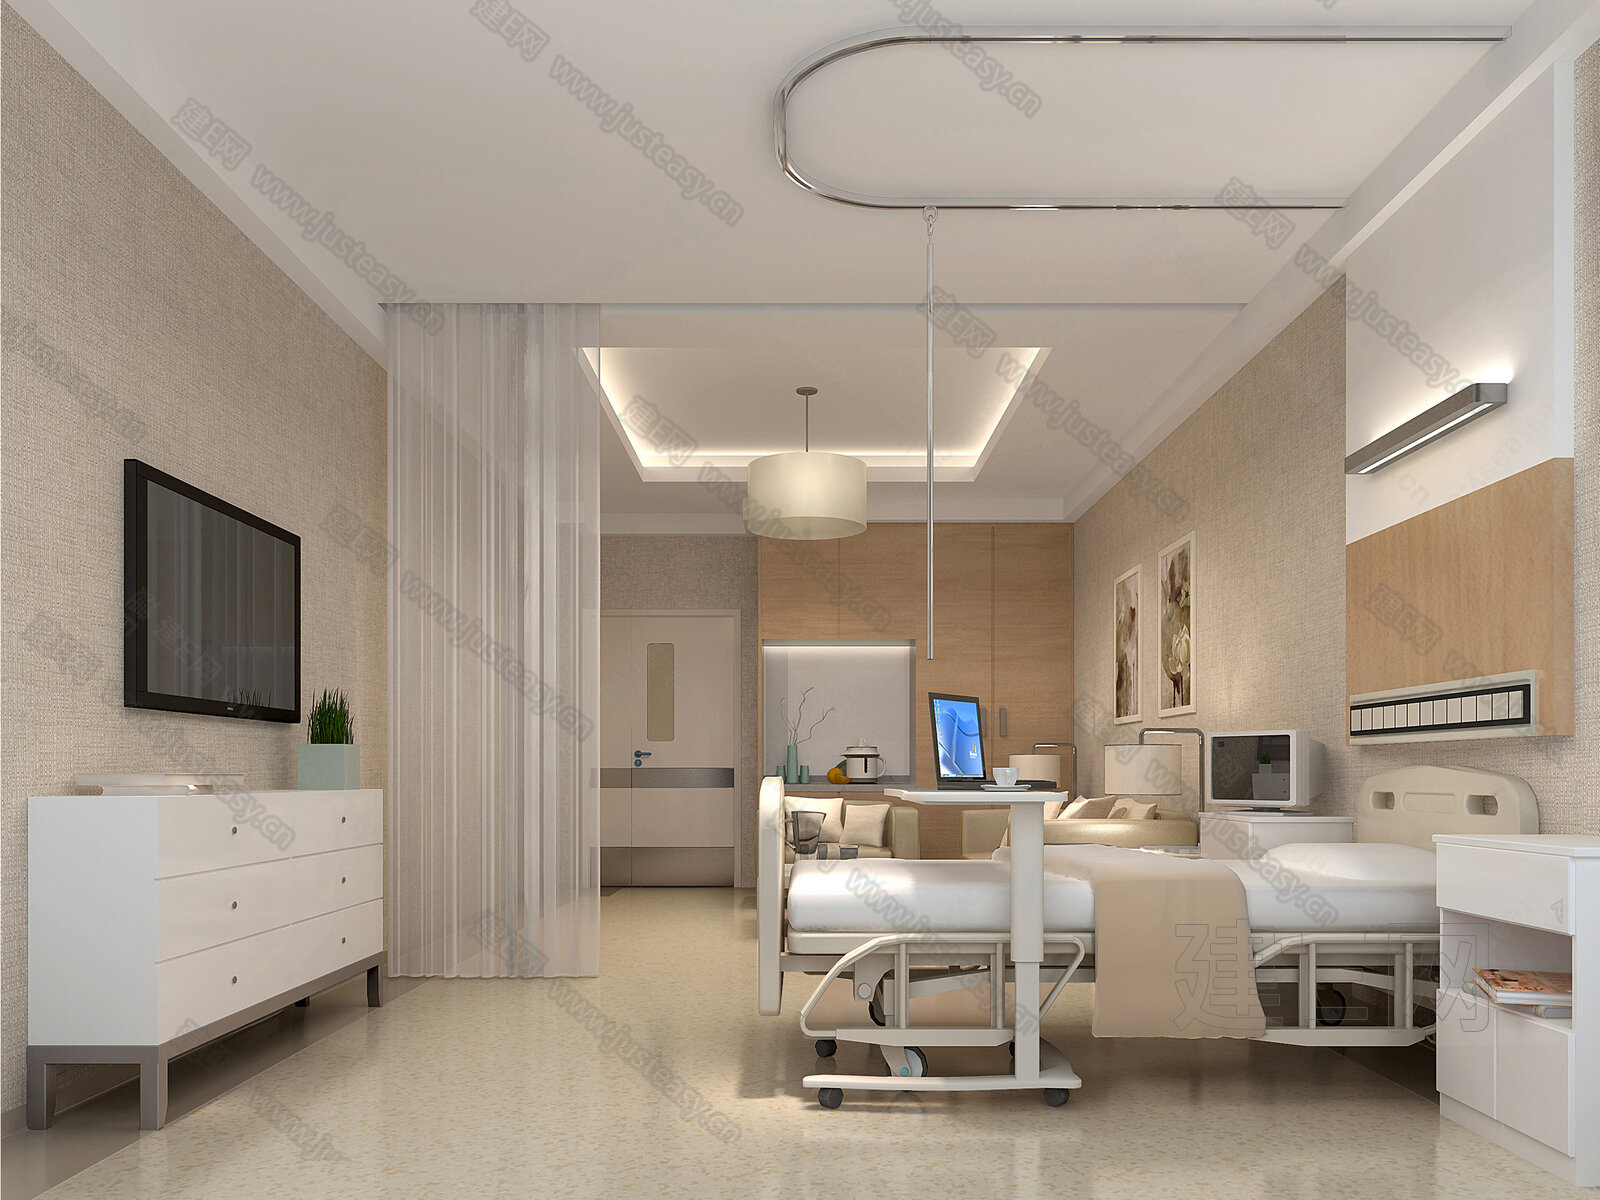 医院豪华病房设计 - 空间设计 - 上海医匠专业医院设计公司